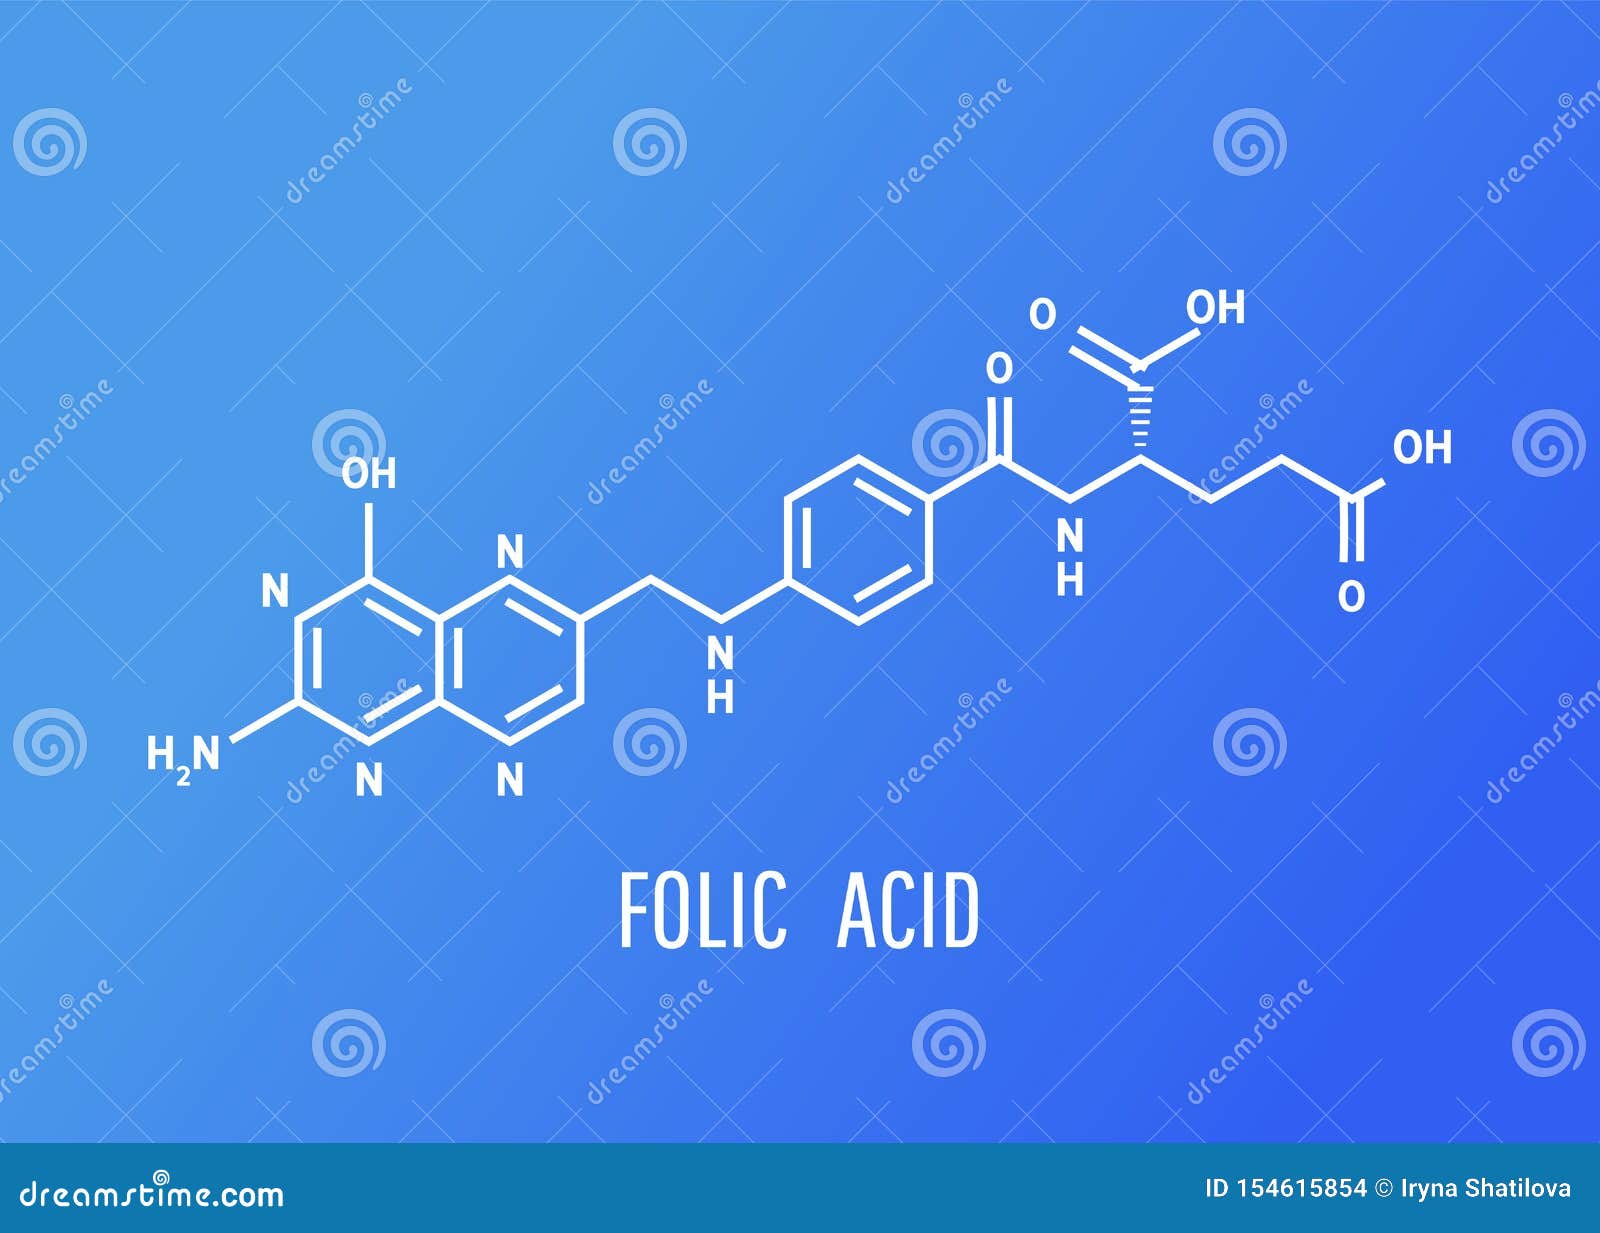 Фолиевая кислота формула. Витамин b9 формула. Folic acid формула. Витамин b9 молекулярная формула. Витамин в9 формула.